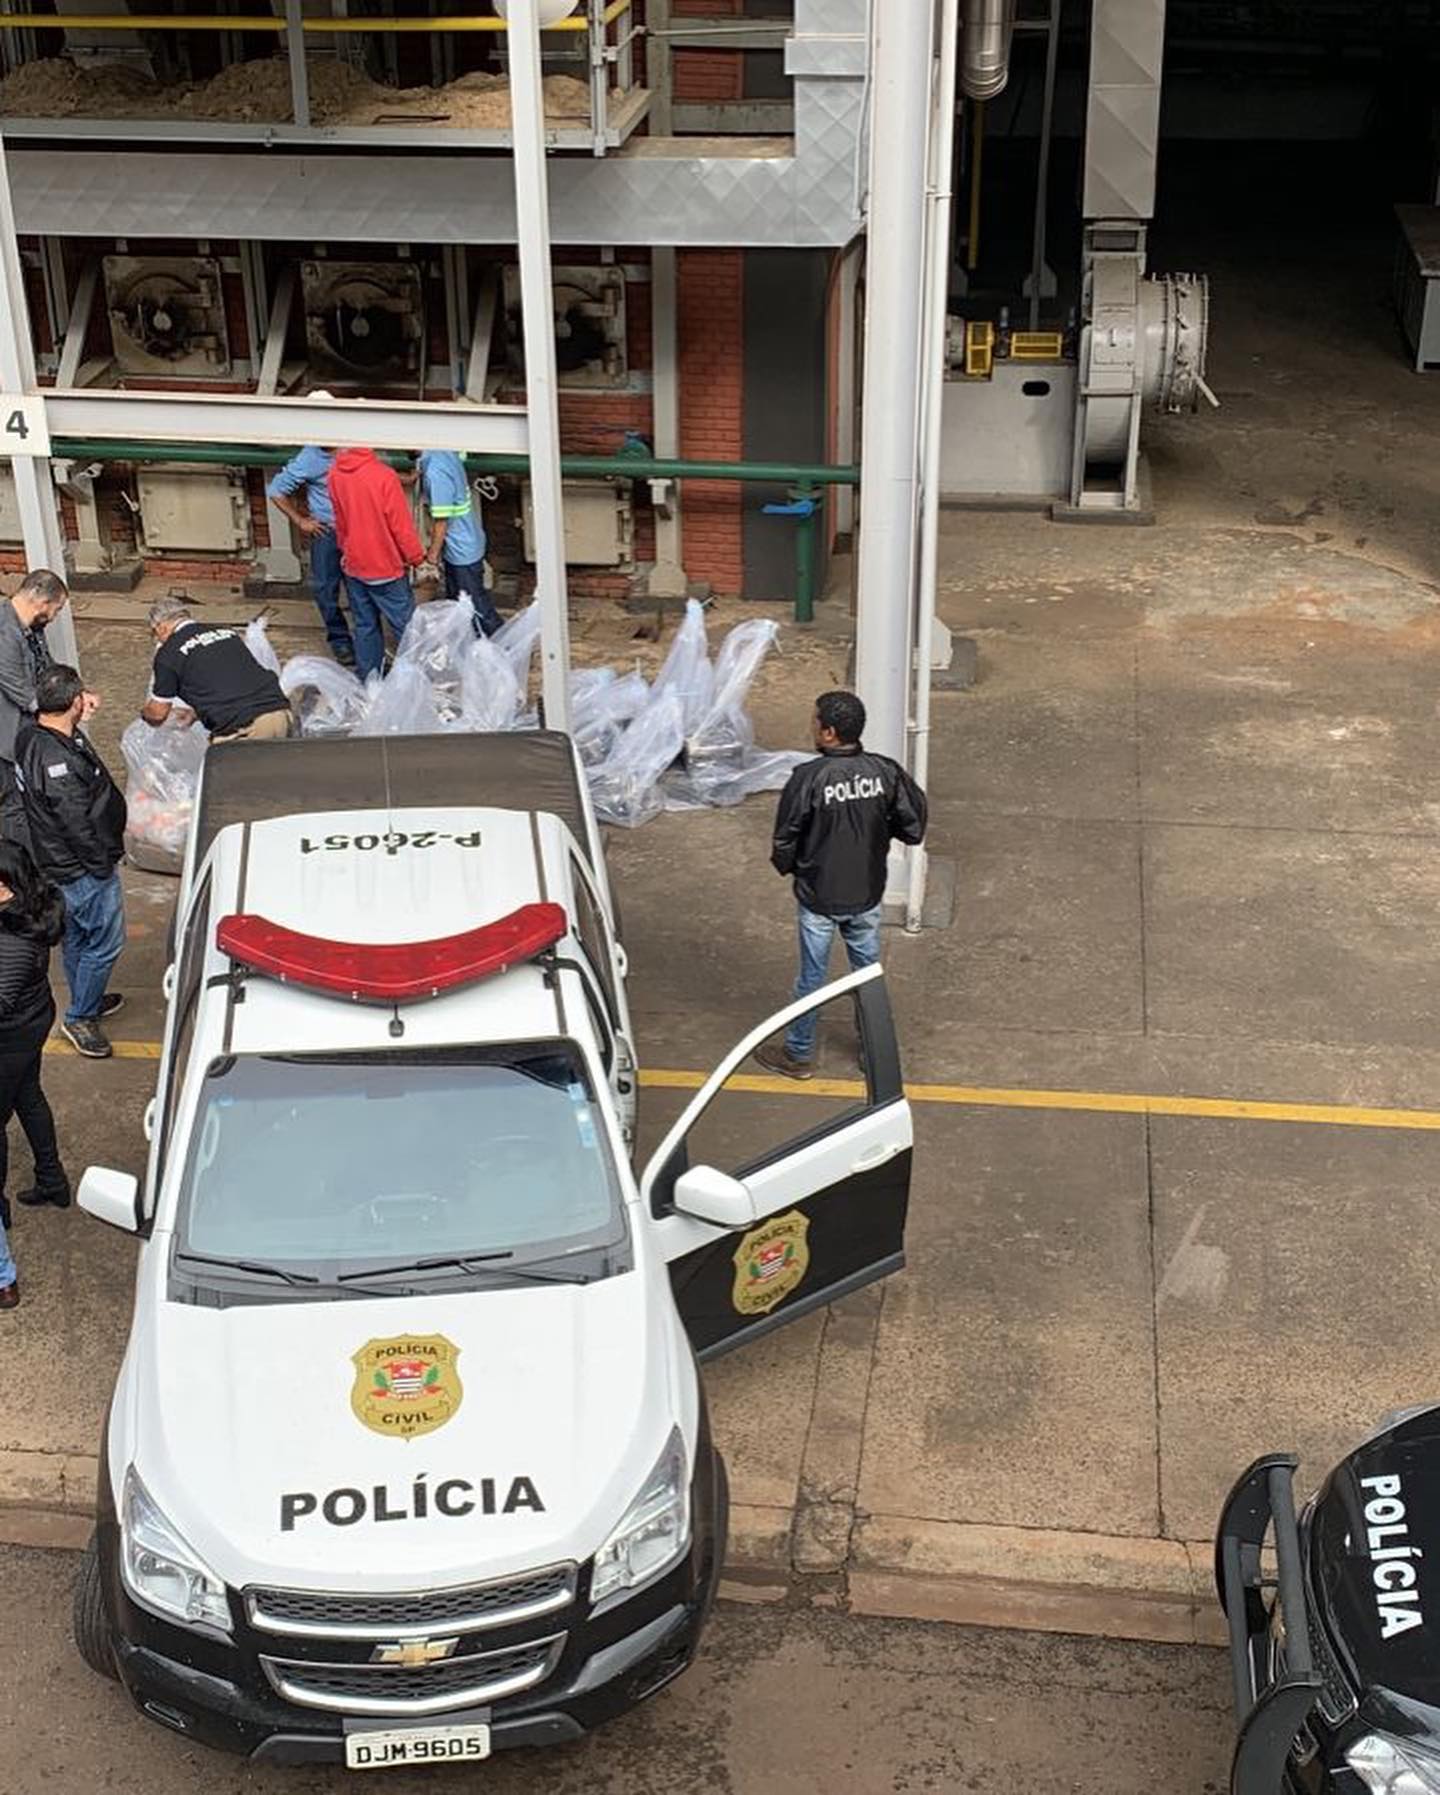 Polícia de Botucatu incinera quase 2 toneladas de drogas